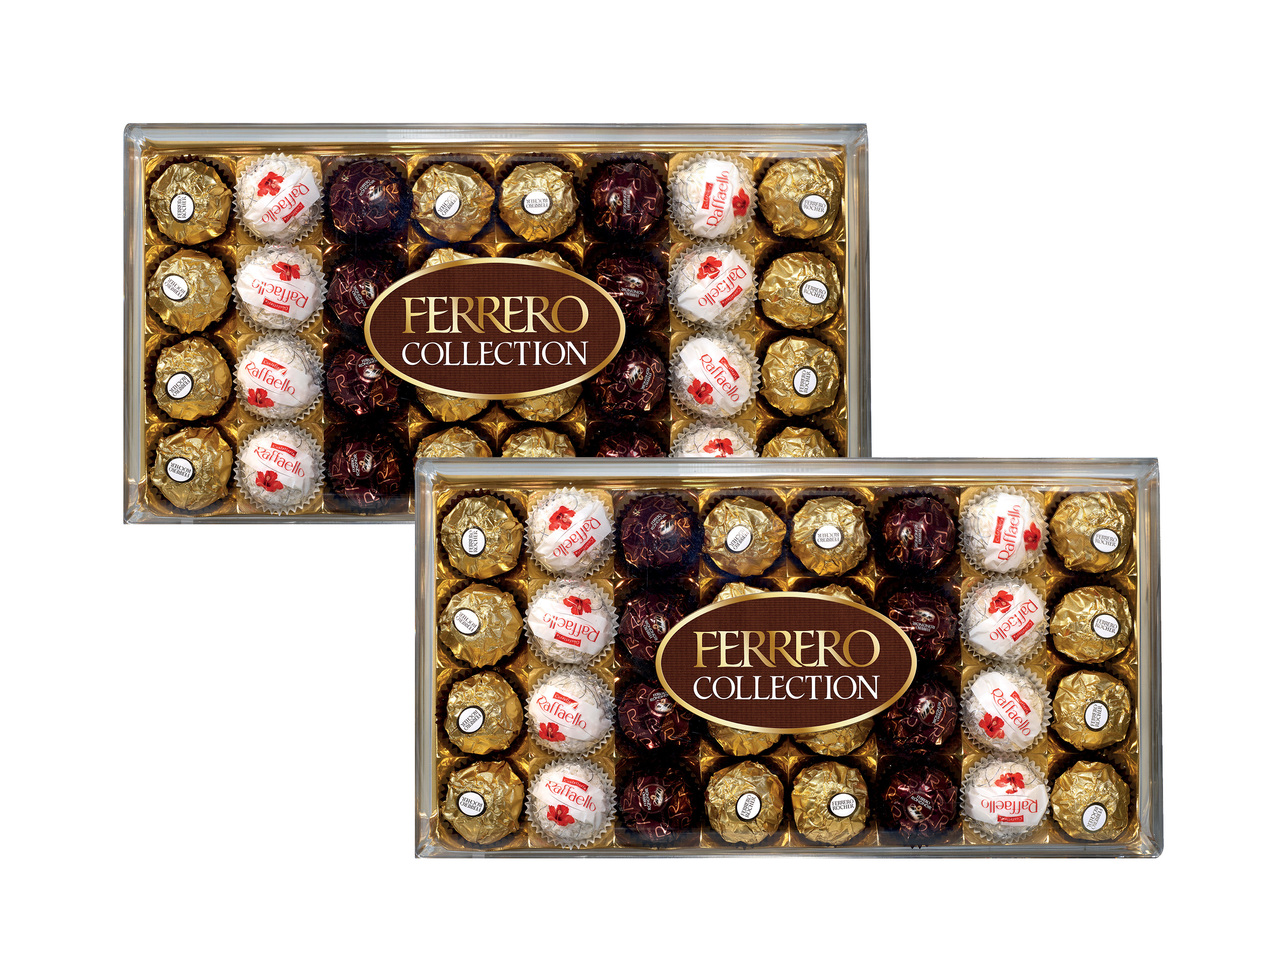 Ferrero collection1